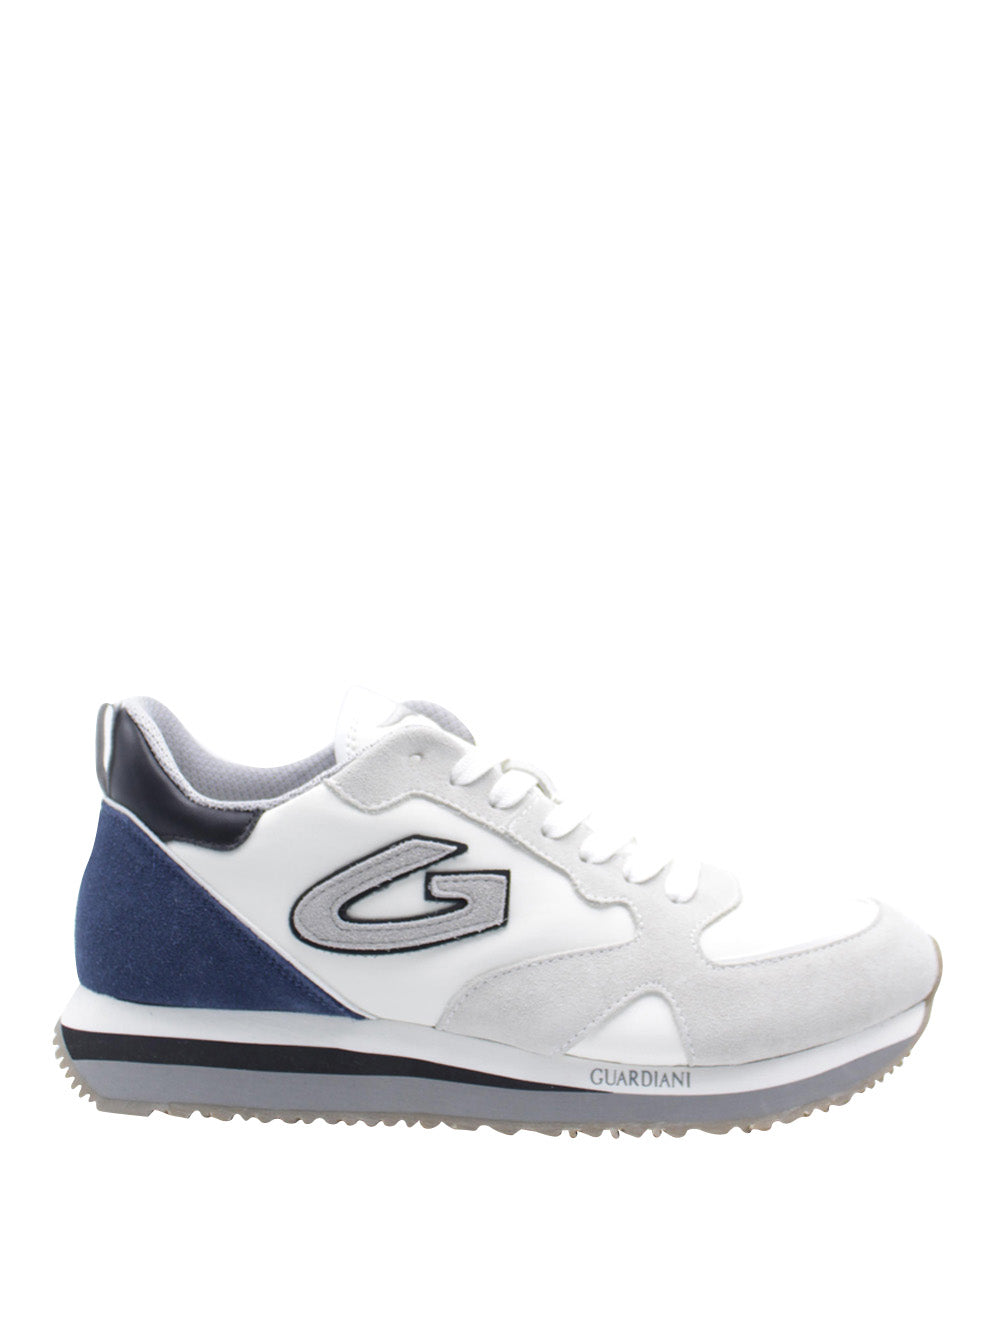 GUARDIANI Sneakers Uomo - Bianco modello AGM009202